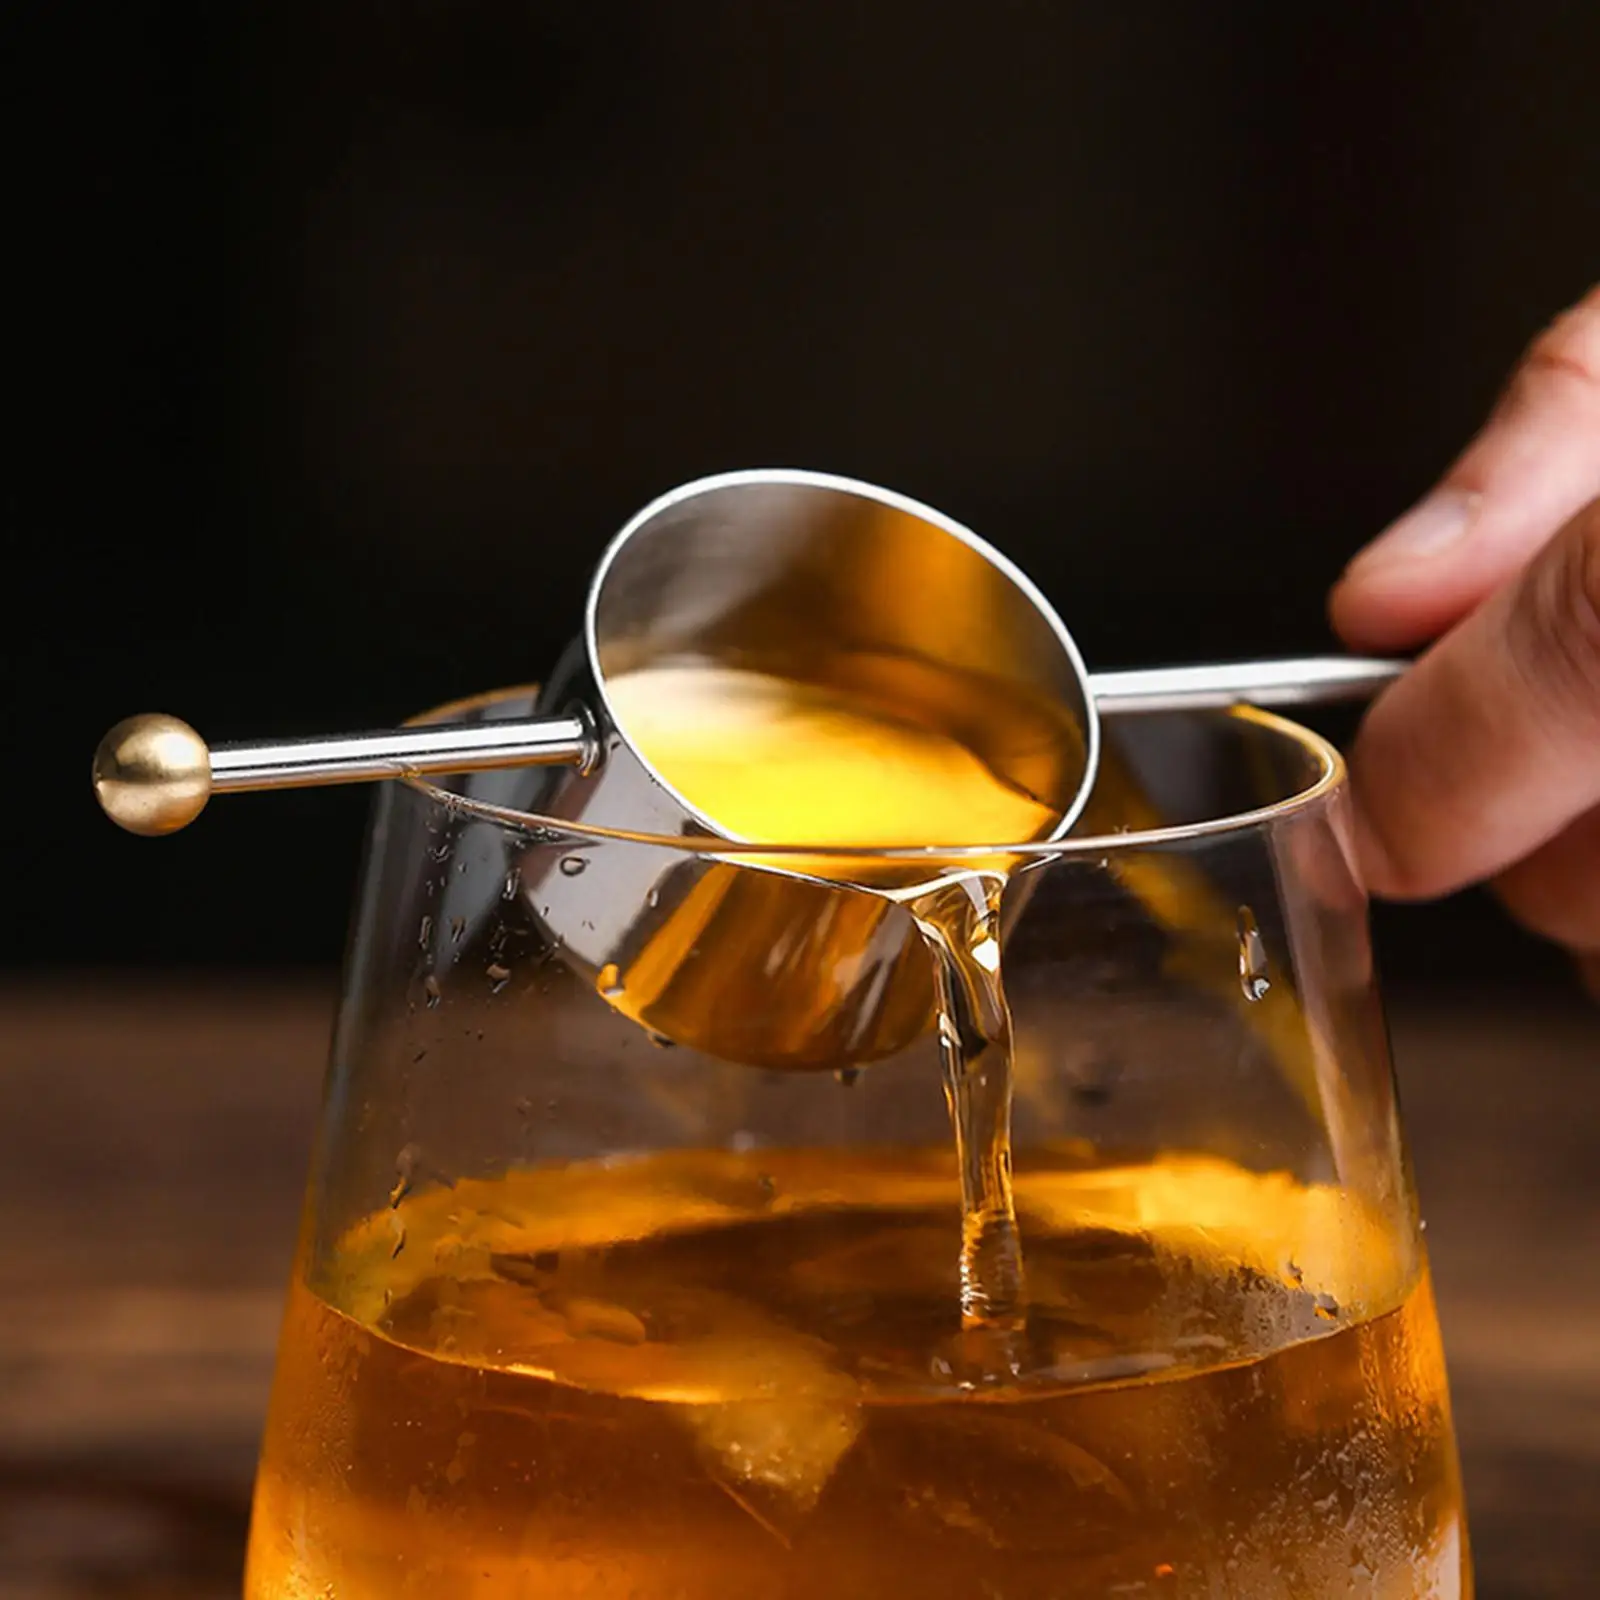 Stainless Steel Cocktail Jigger for Bartending for Restaurant Bar Home